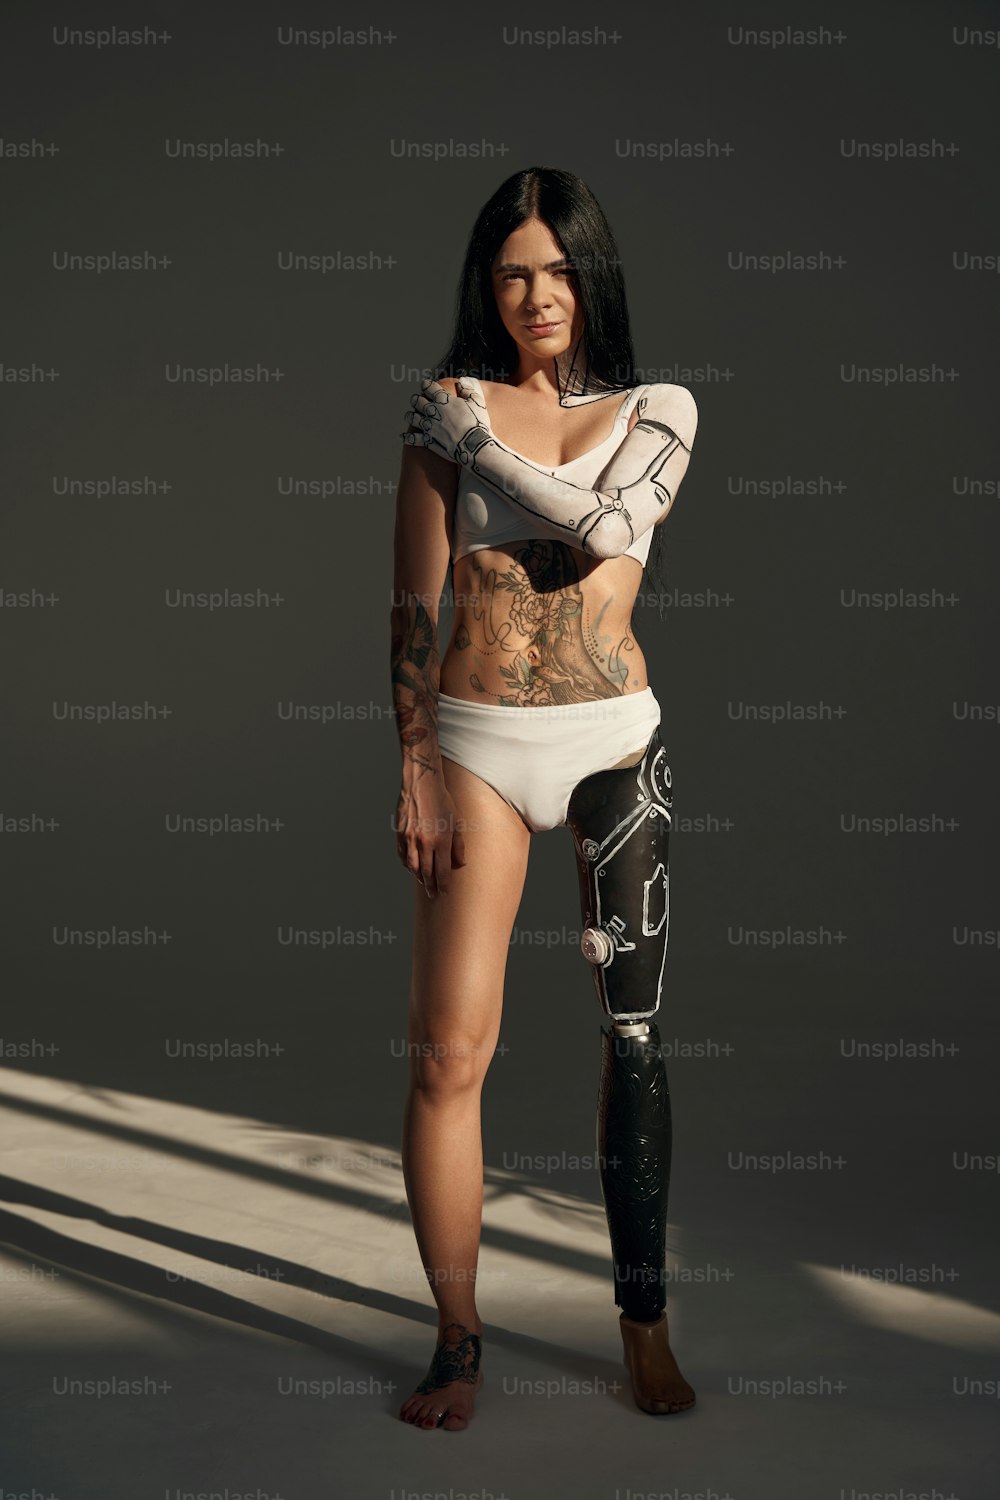 Vista de cuerpo entero de la mujer tatuada con patrón cyborg en su cuerpo posando en el estudio sobre fondo oscuro. Concepto de personas y robot